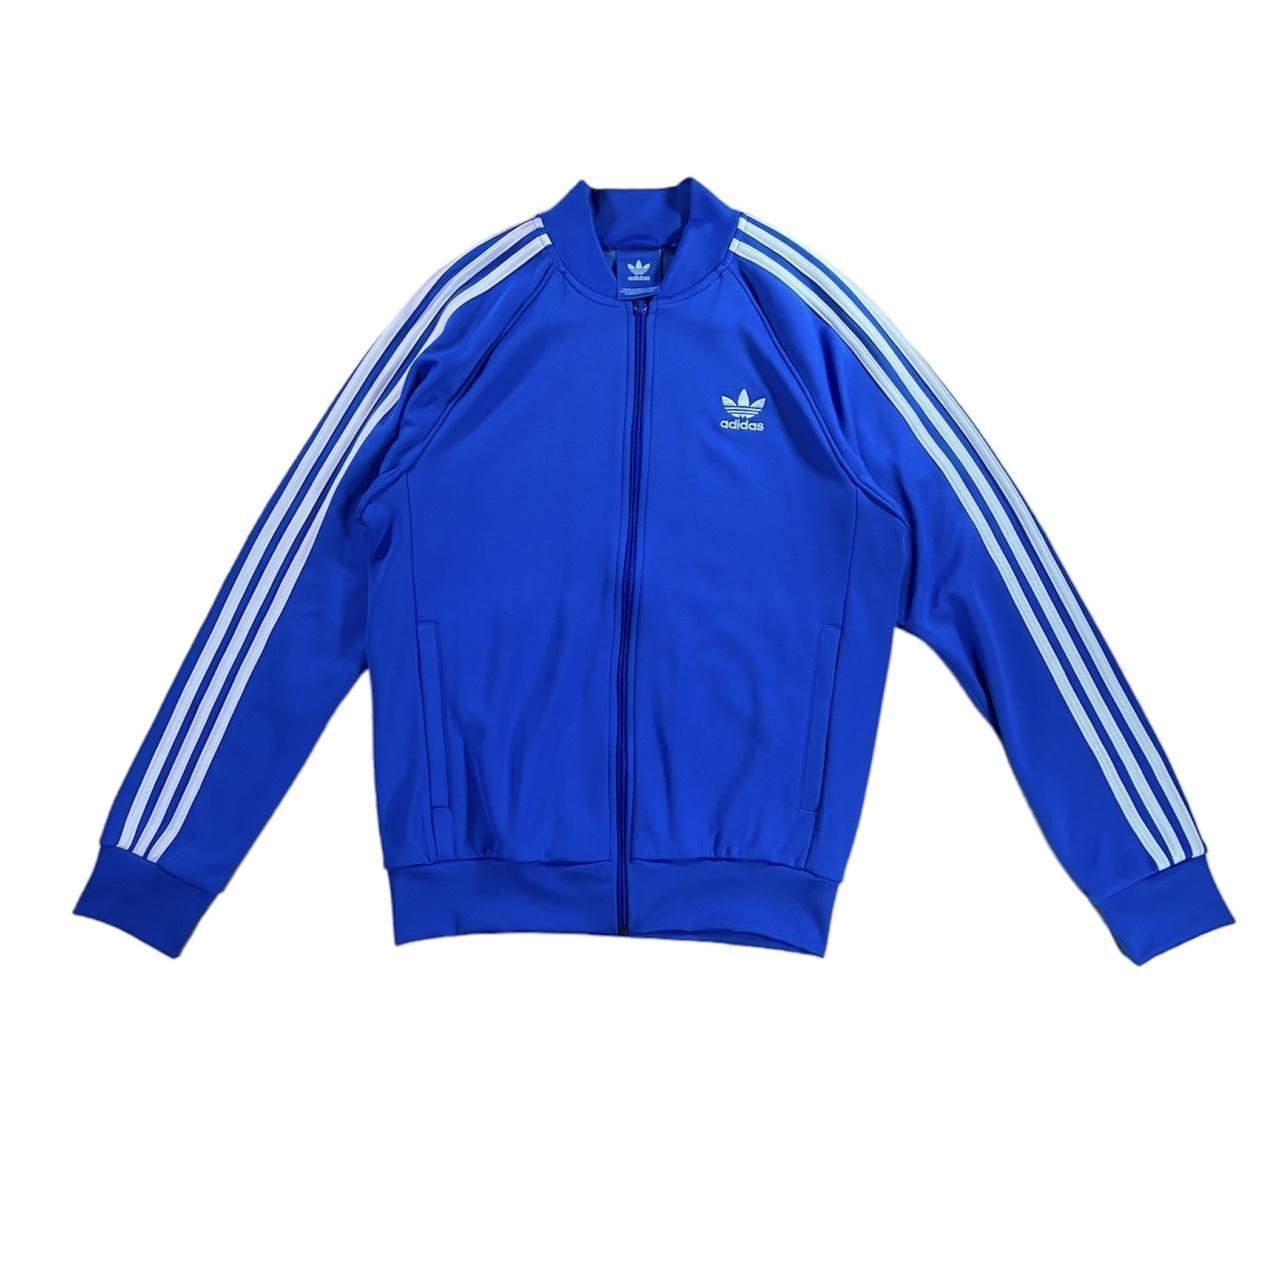 Adidas Royal Blue superstar track jacket. Great... - Depop